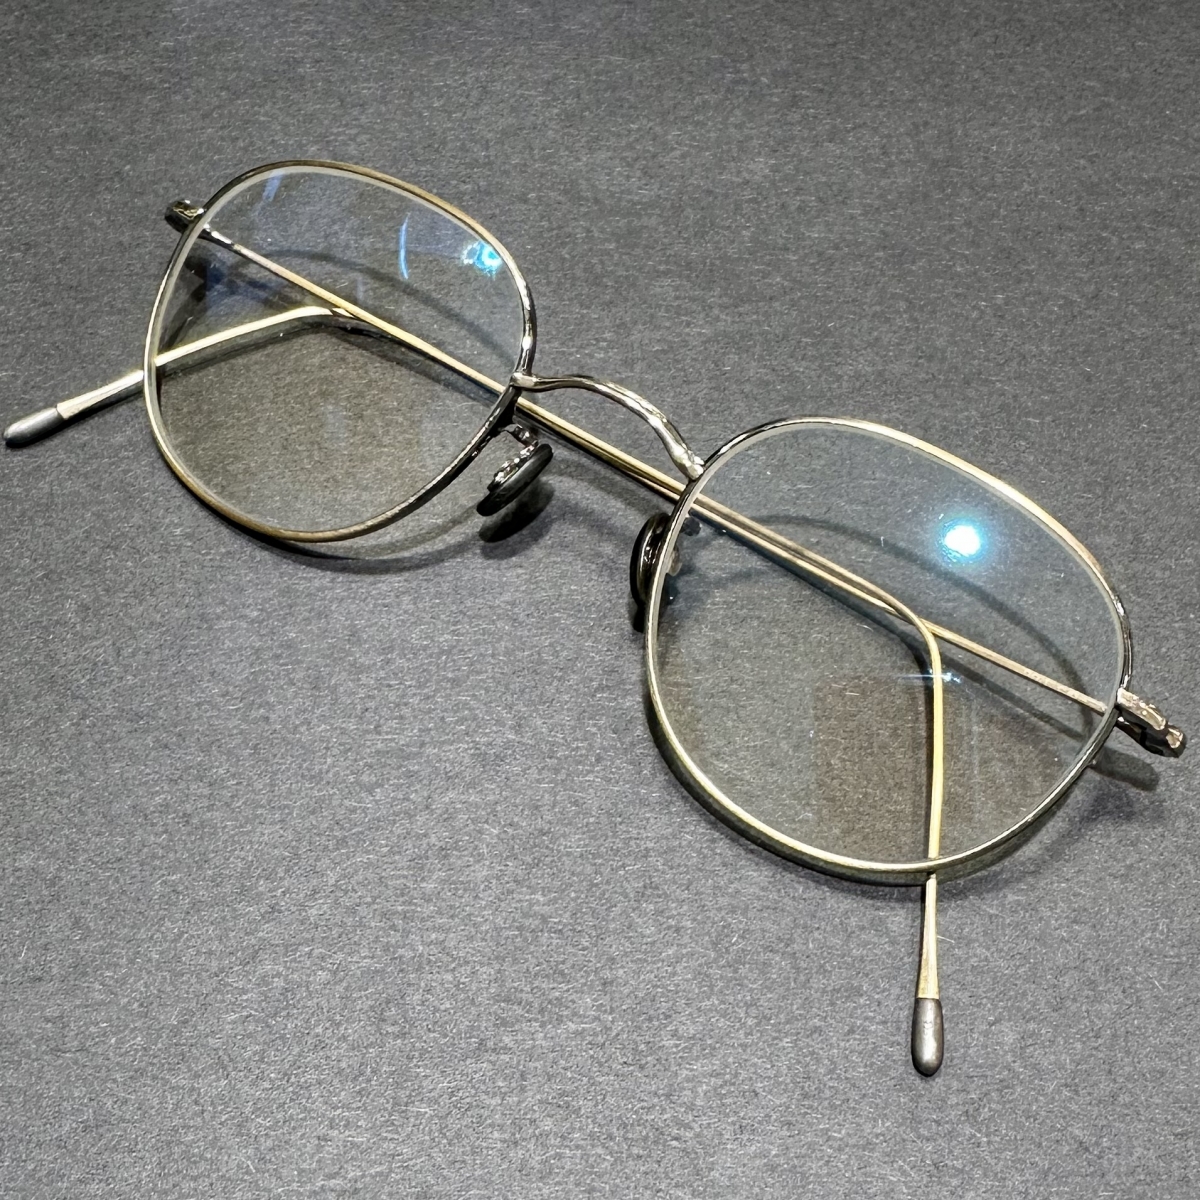 アイヴァン7285のオールドゴールド no-1 4S-CL ウェリントンシェイプ 眼鏡の買取実績です。